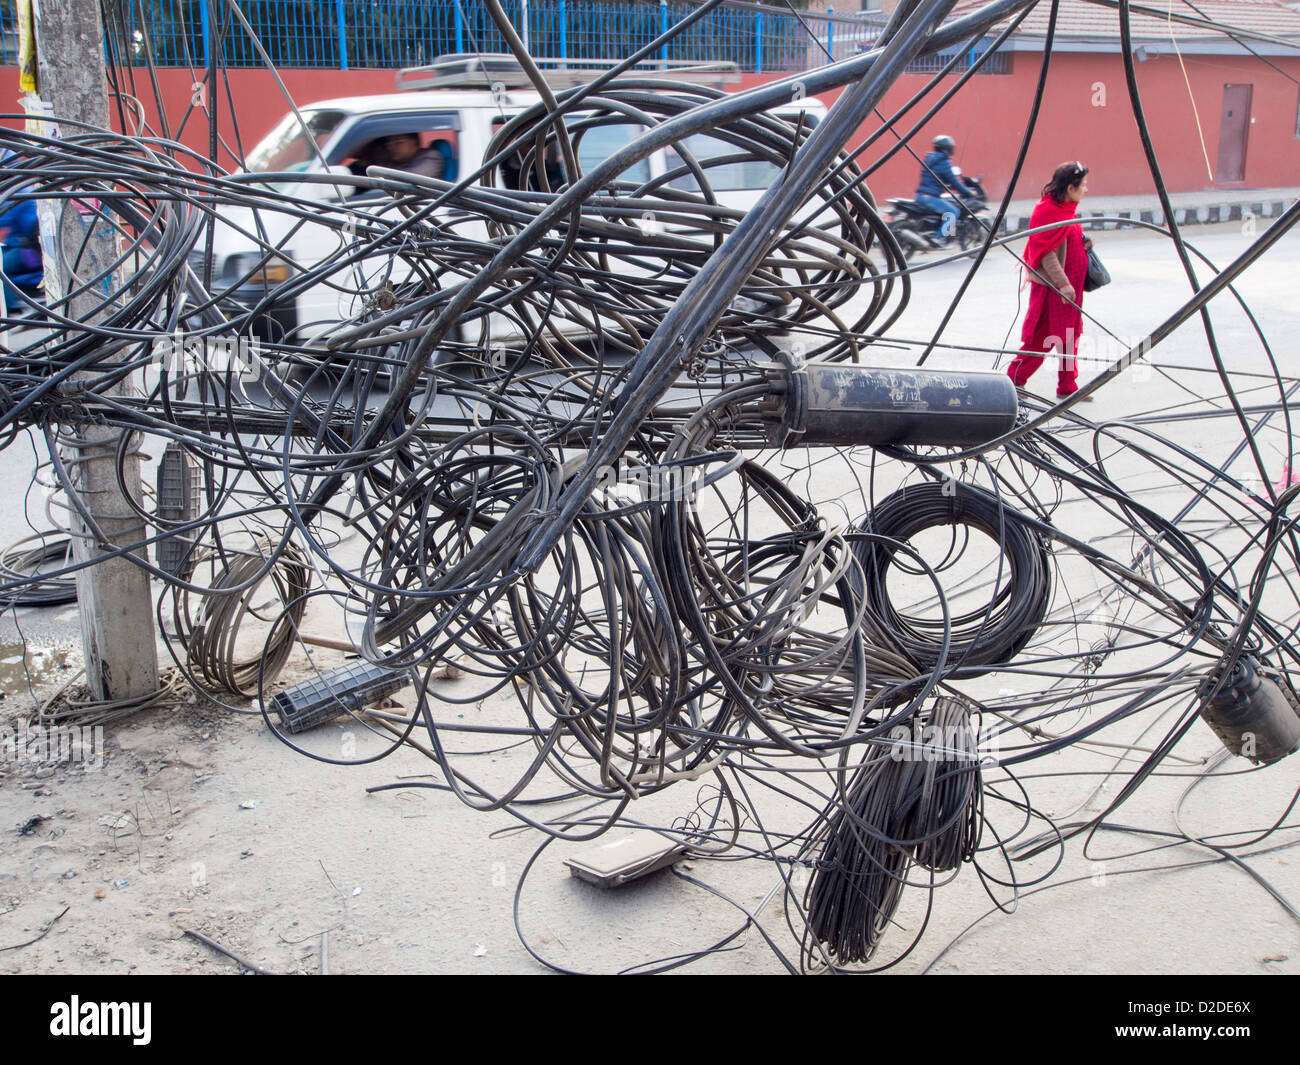 Un électricien travaille sur un enchevêtrement de fils électriques à Katmandou, au Népal. Banque D'Images